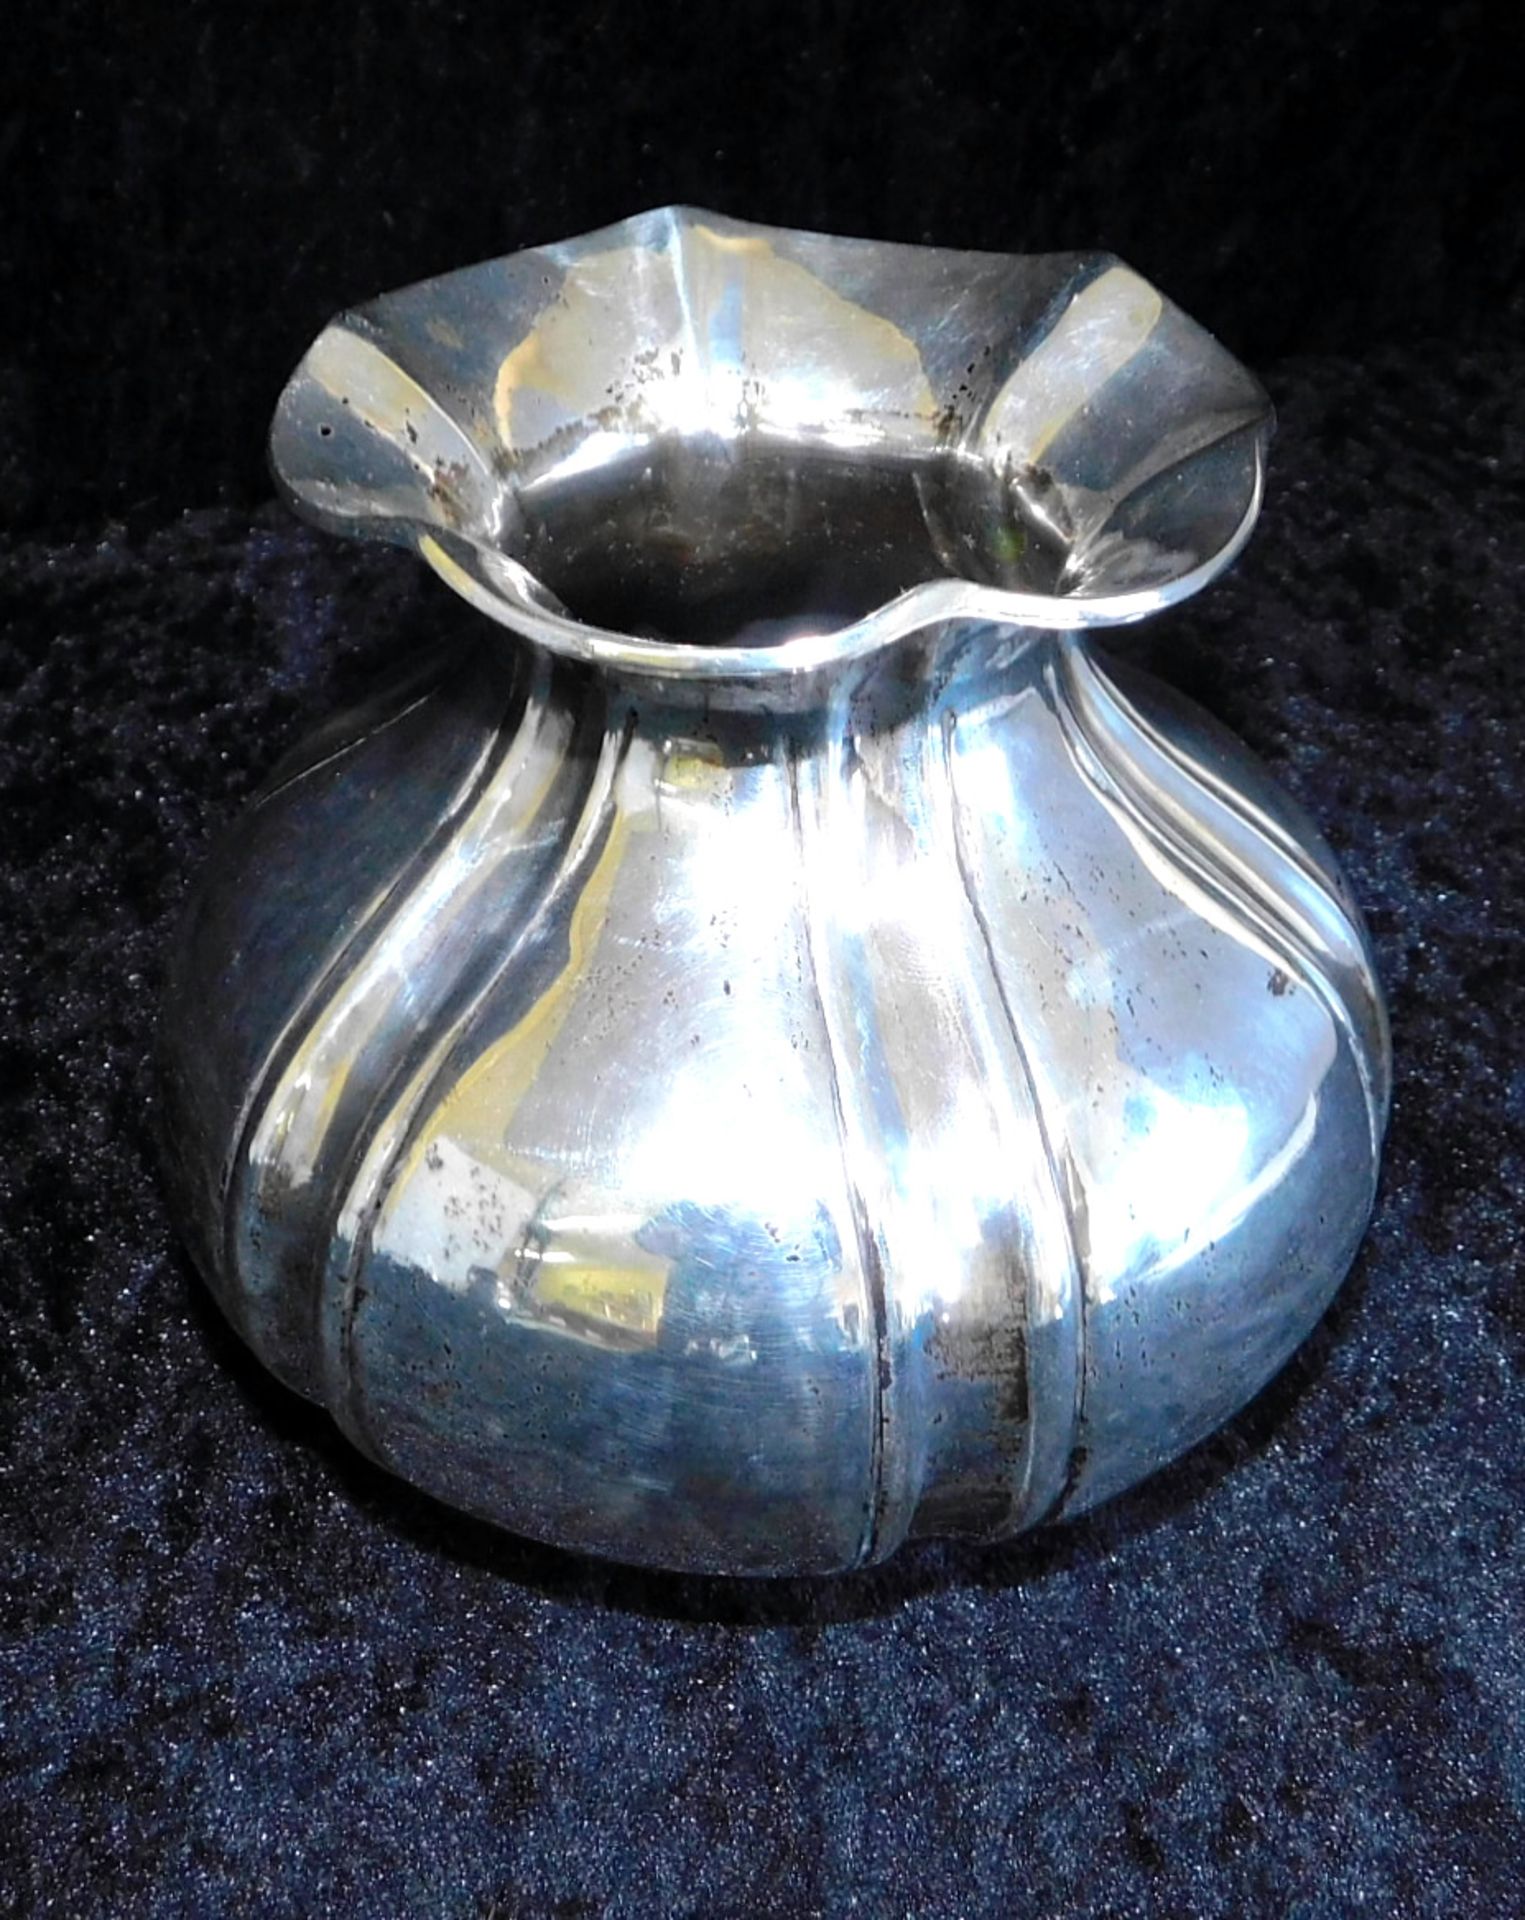 Vase Silber, AK 900 gepunzt, Biedermeier um 1830, Gewicht 243 g, Höhe 11 cm, Ø oberer Rand 9 c - Bild 3 aus 3